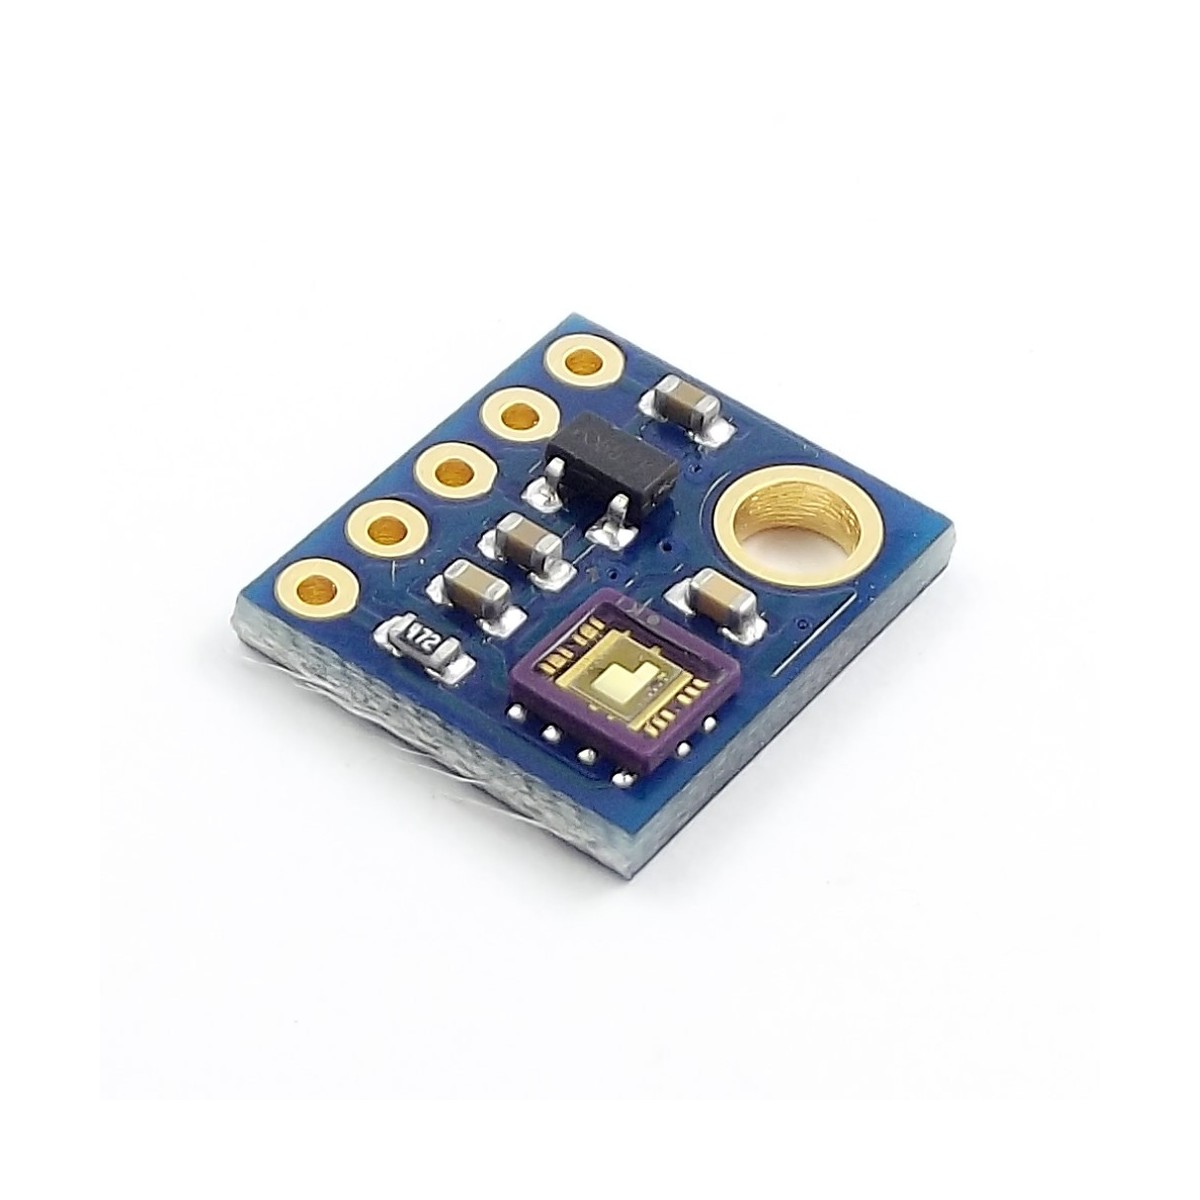 Módulo Sensor de luz ultravioleta (UV) ML8511